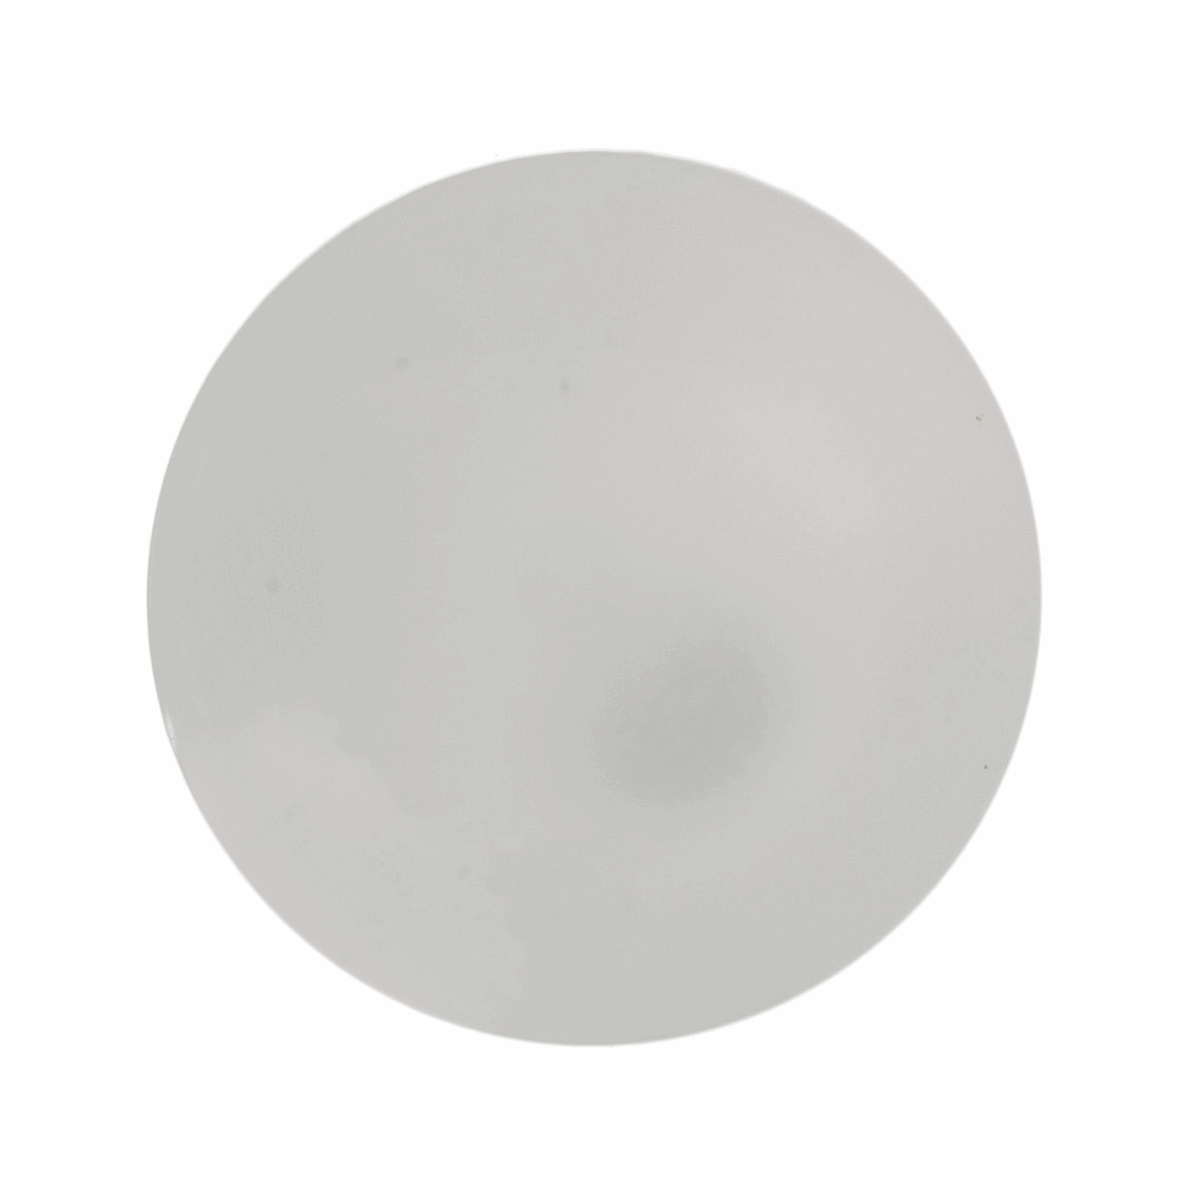 Hemline Round White Button - 11.25mm (Pack of 6)